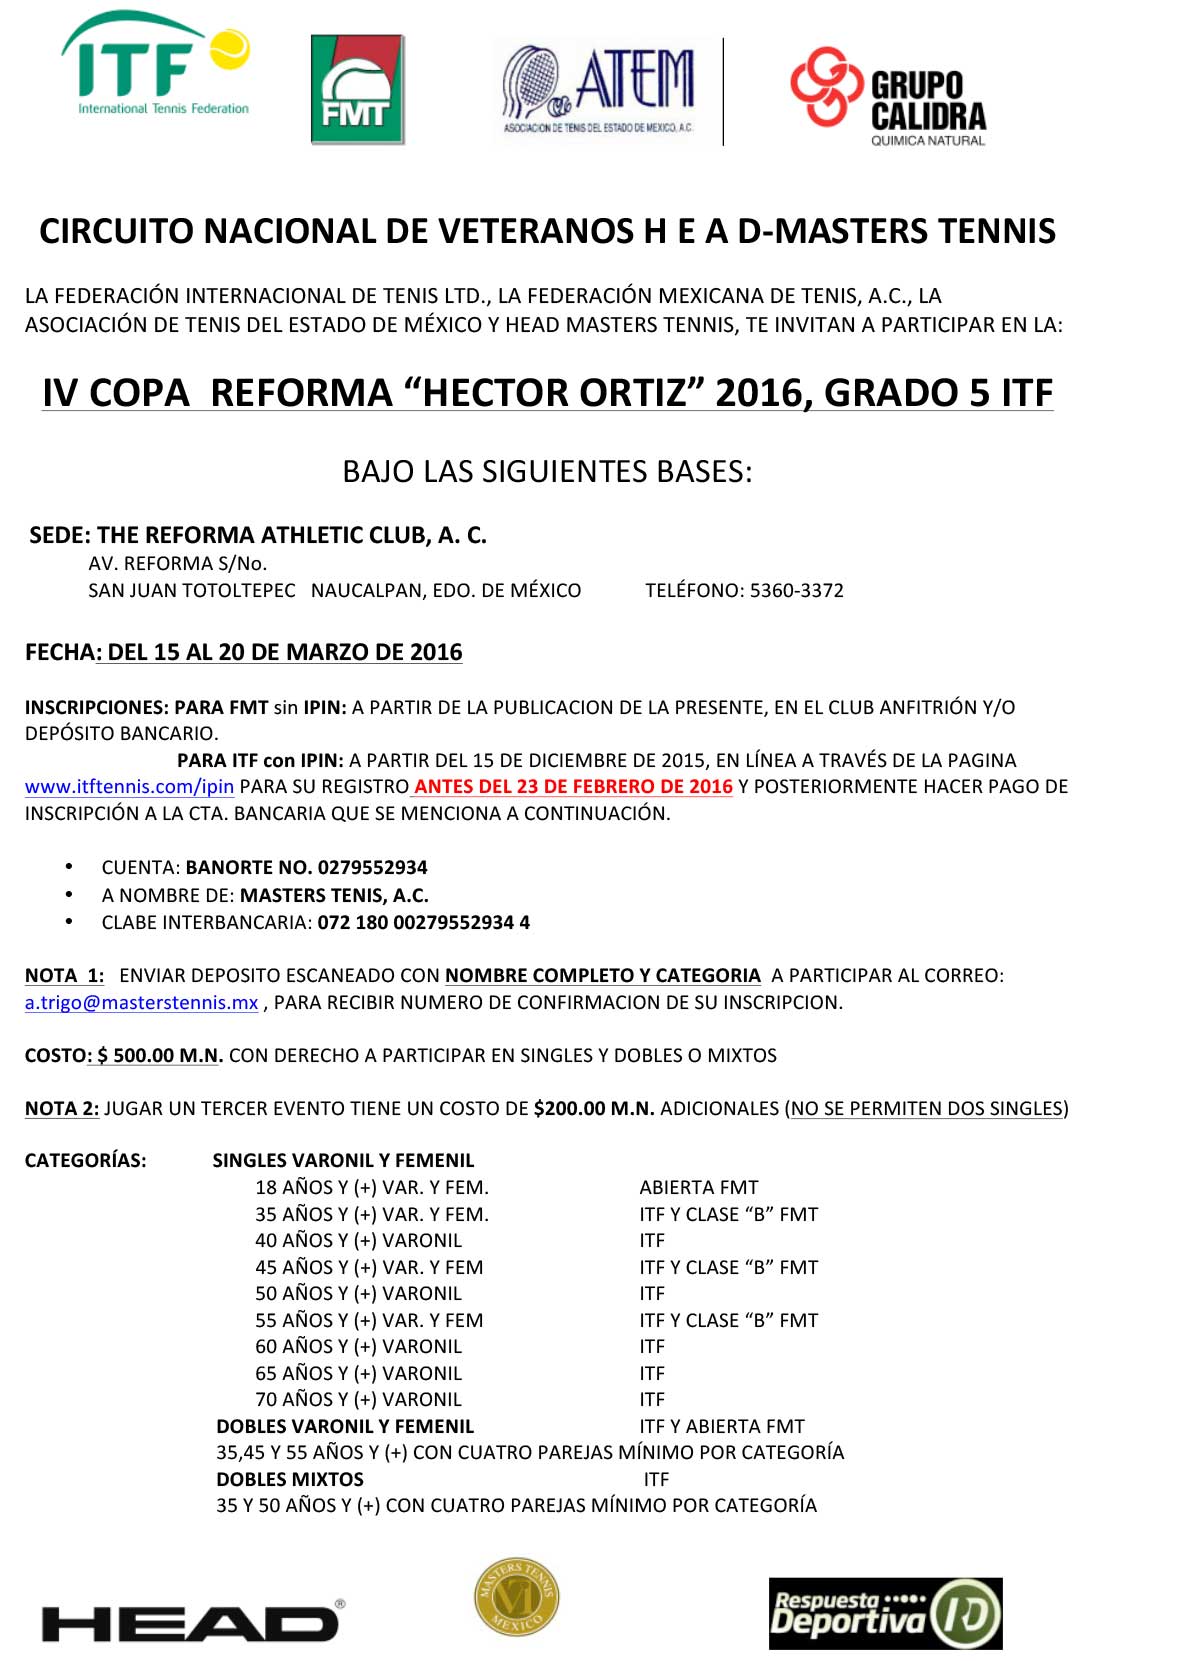 COPA-REFORMA-H--ORTIZ-2016-(DEF)-1